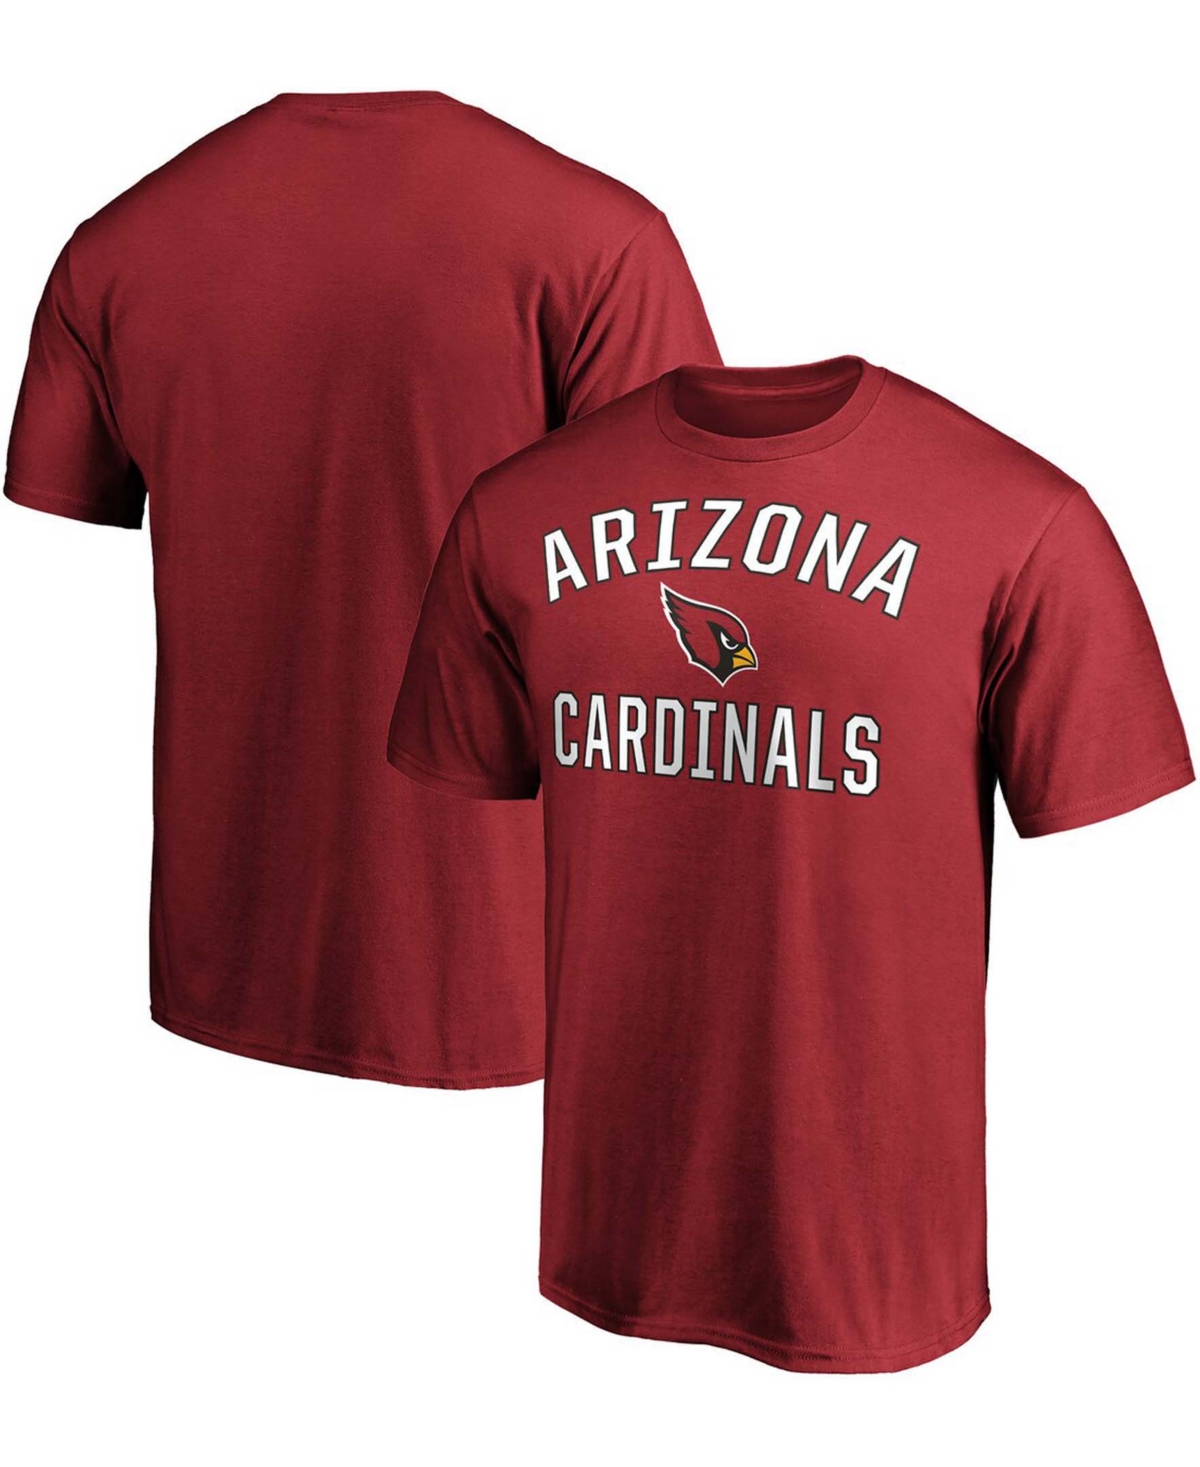 Fanatics Men's Cardinal Arizona Cardinals Victory Arch T-shirt